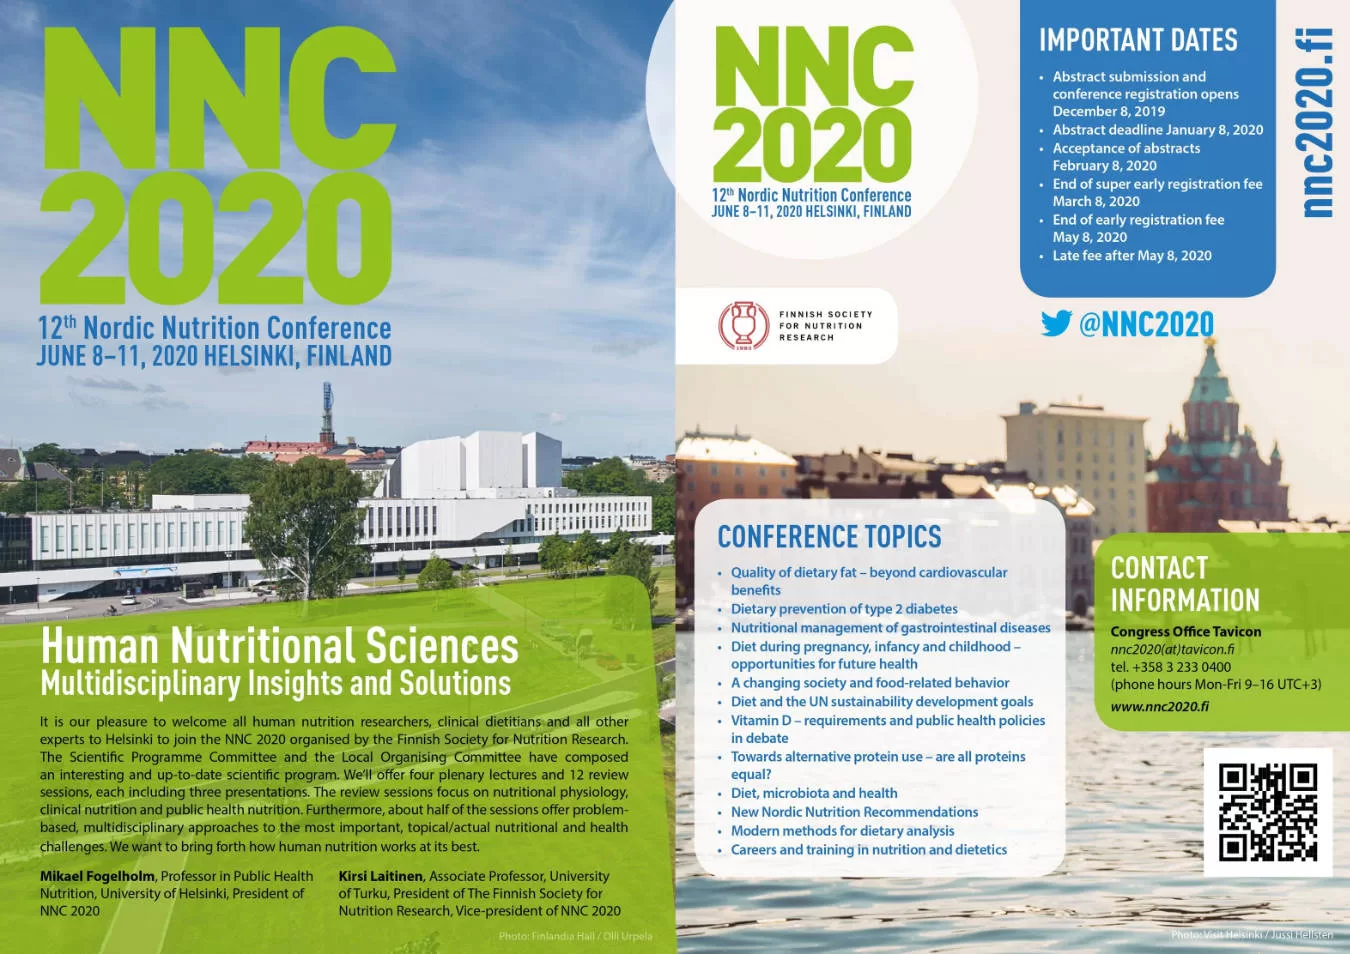 NNC 2020